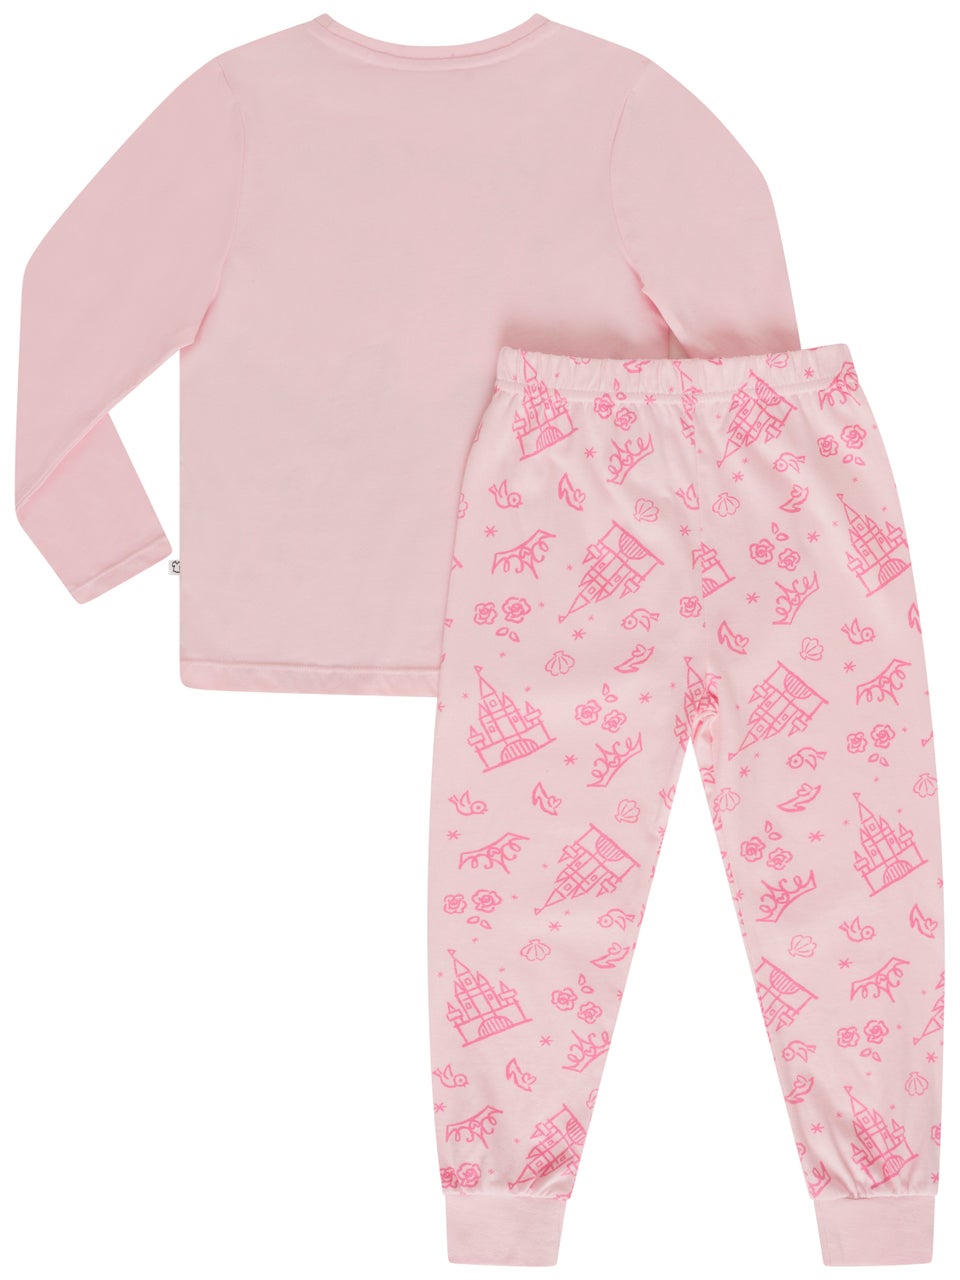 Brand Threads Kids' Princess Pyjamas